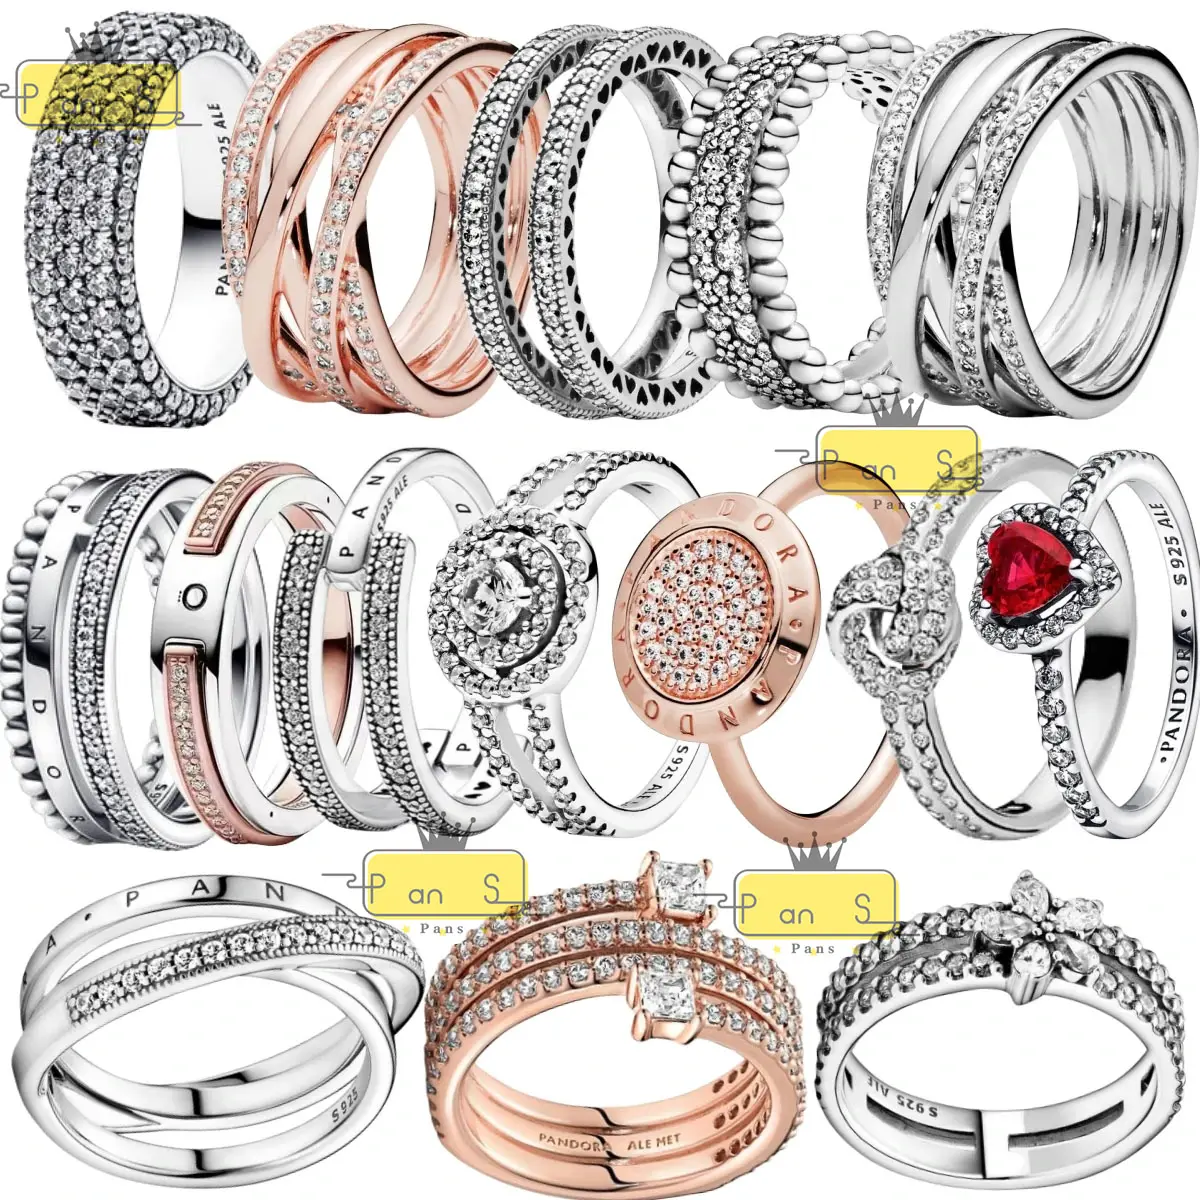 خاتم جديد فائق الجودة فضة 925 حمراء شكل قلب من الزركون مناسب لأجهزة ipandorait خواتم نسائية رائعة خاتم فاخر مجوهرات